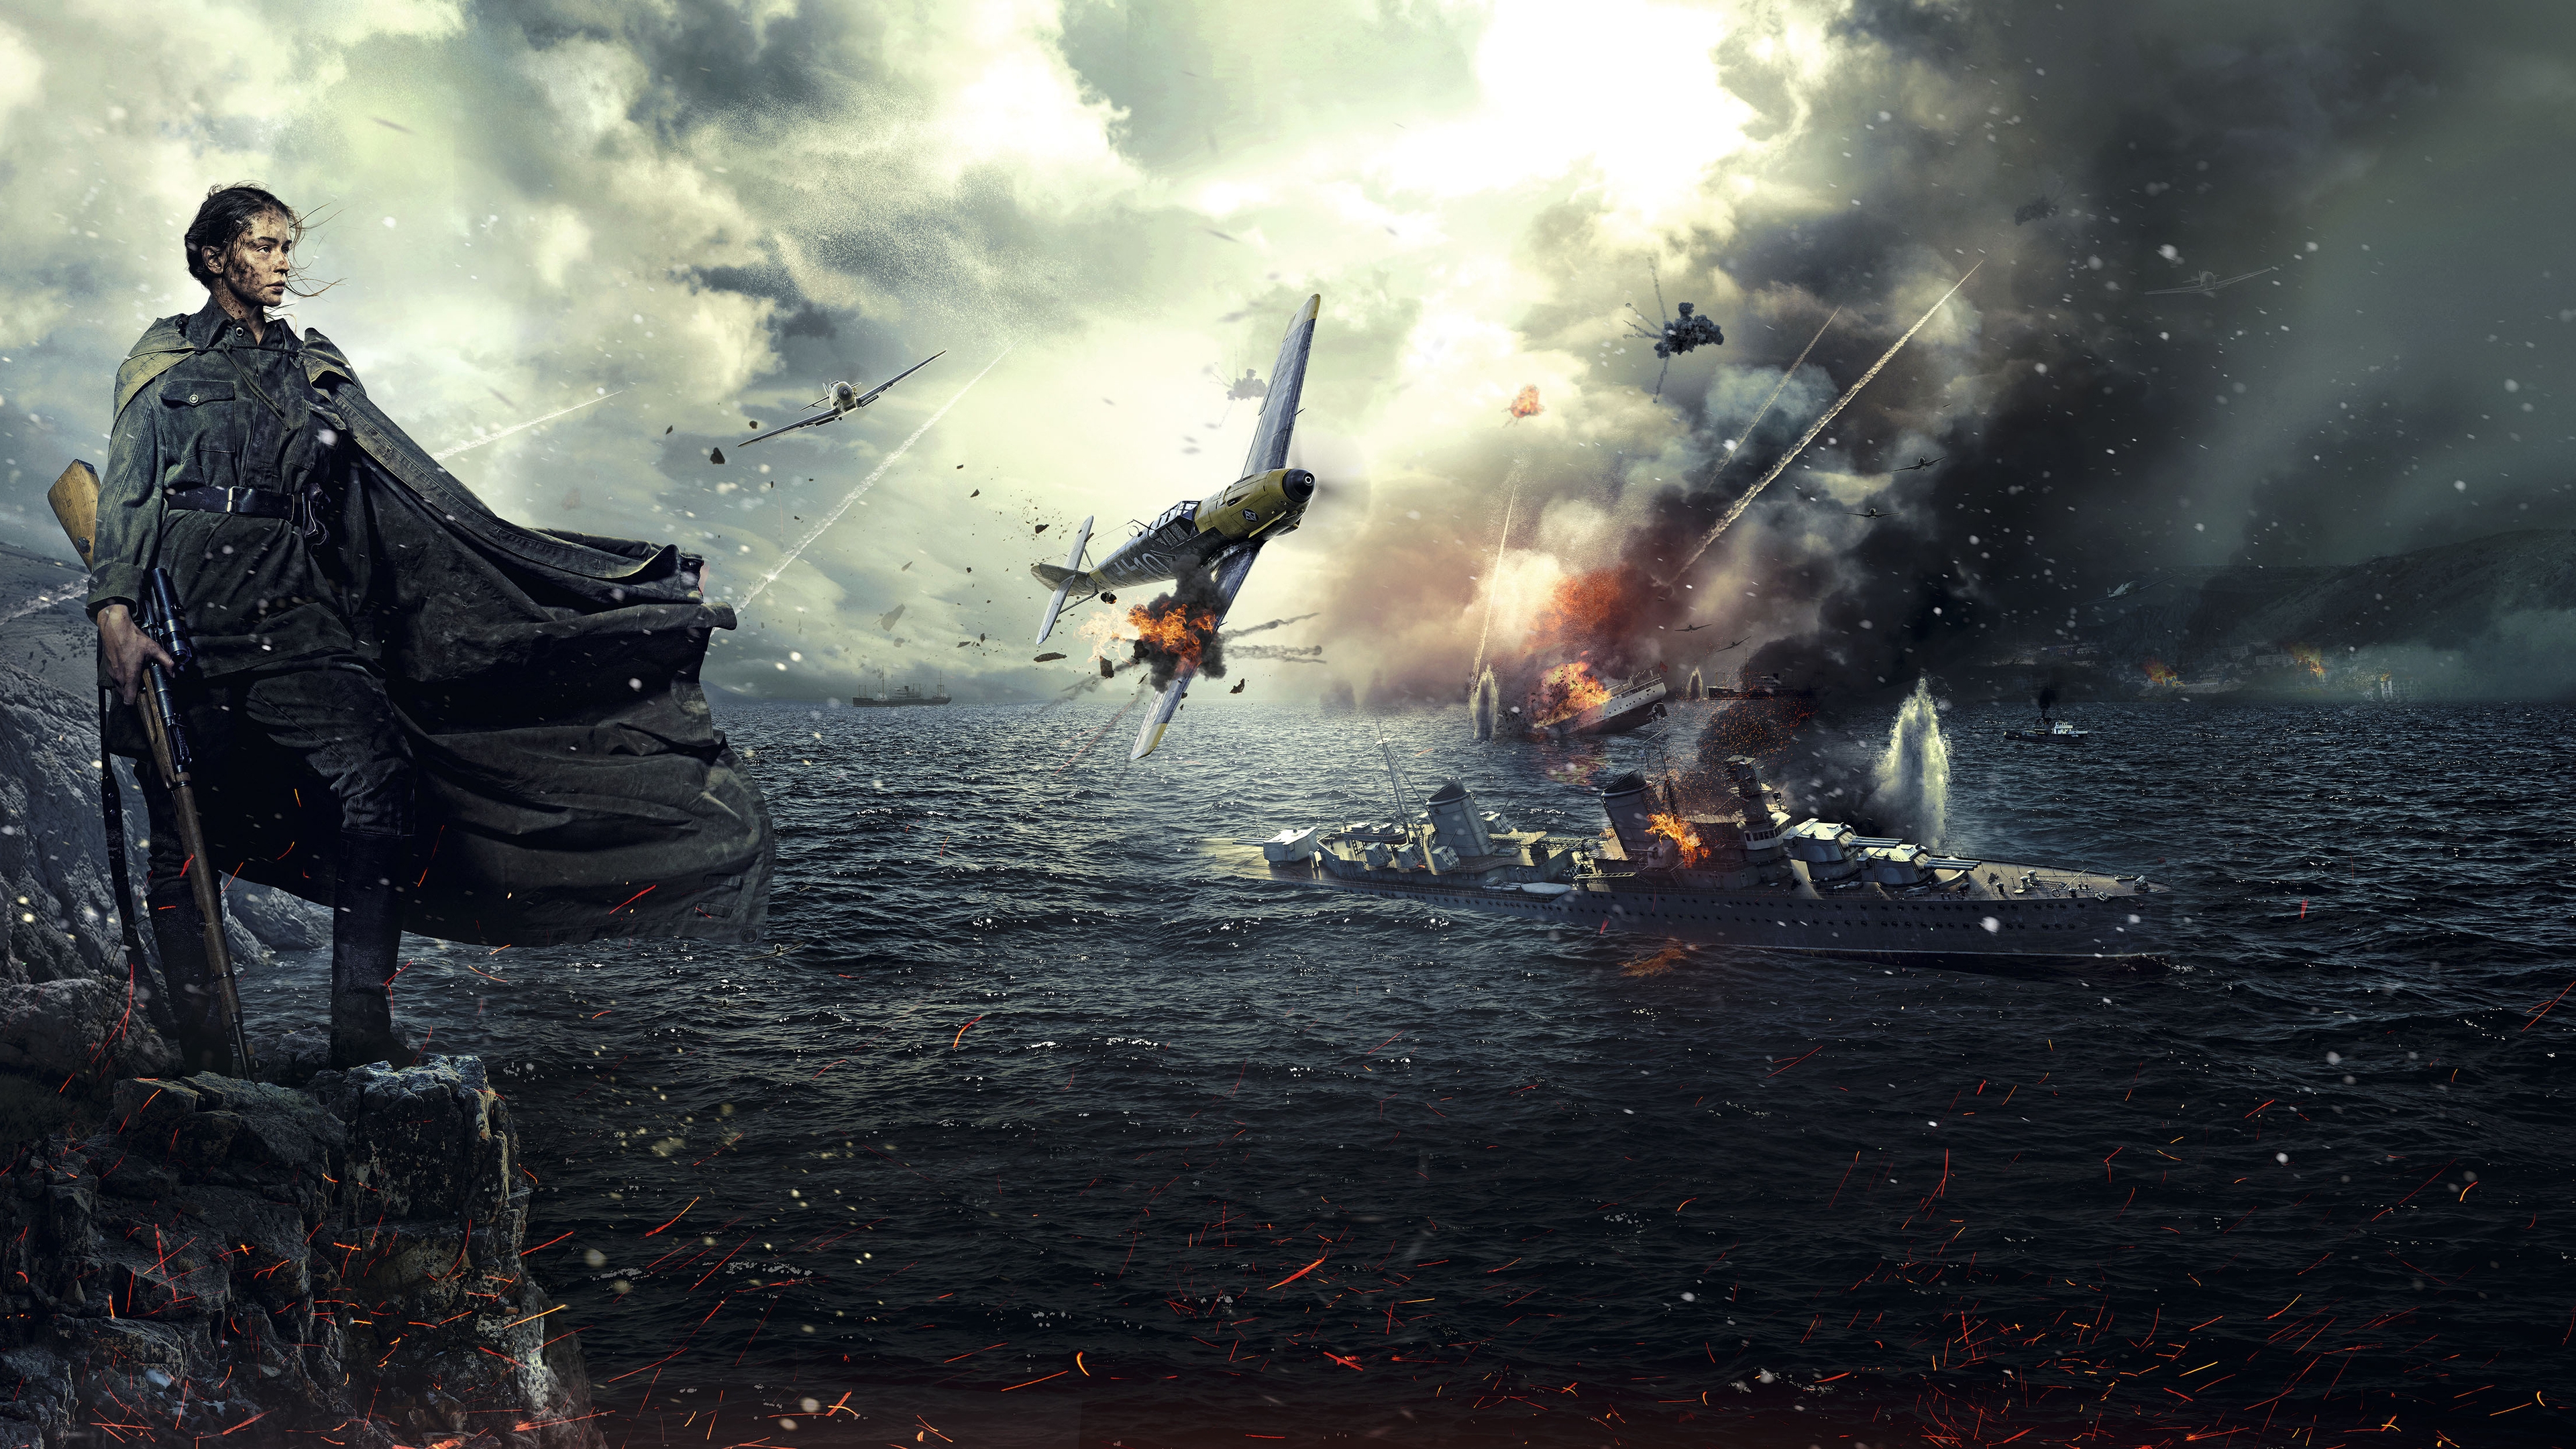 Battle for Sevastopol 2015 for 3840 x 2160 Ultra HD resolution